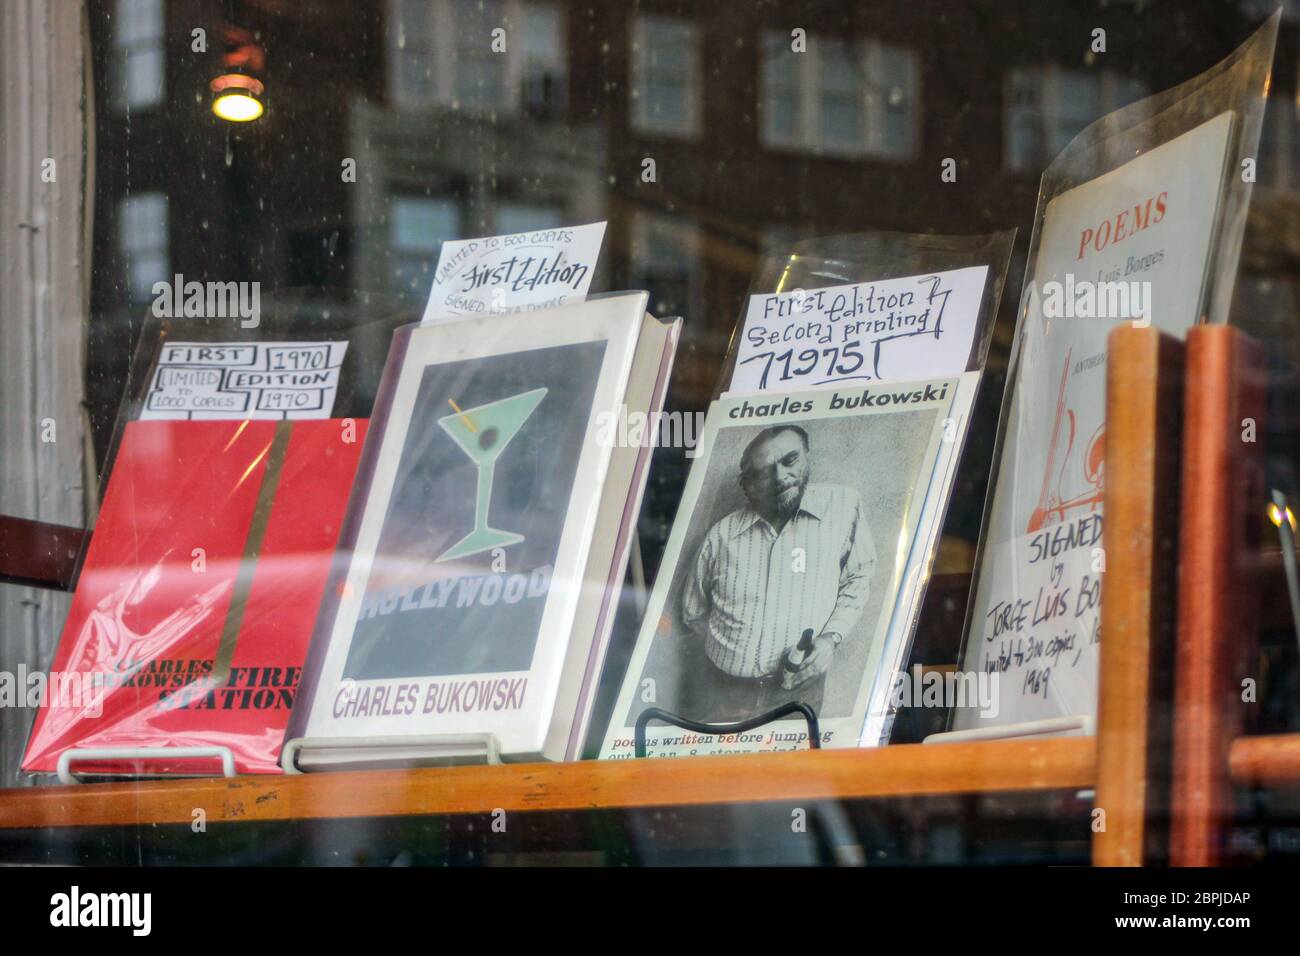 Seltene Ausgaben von Charles Bukowski-Büchern in einem Second Hand-Buchladen-Schaufenster in Manhattan, New York City, Vereinigte Staaten von Amerika Stockfoto